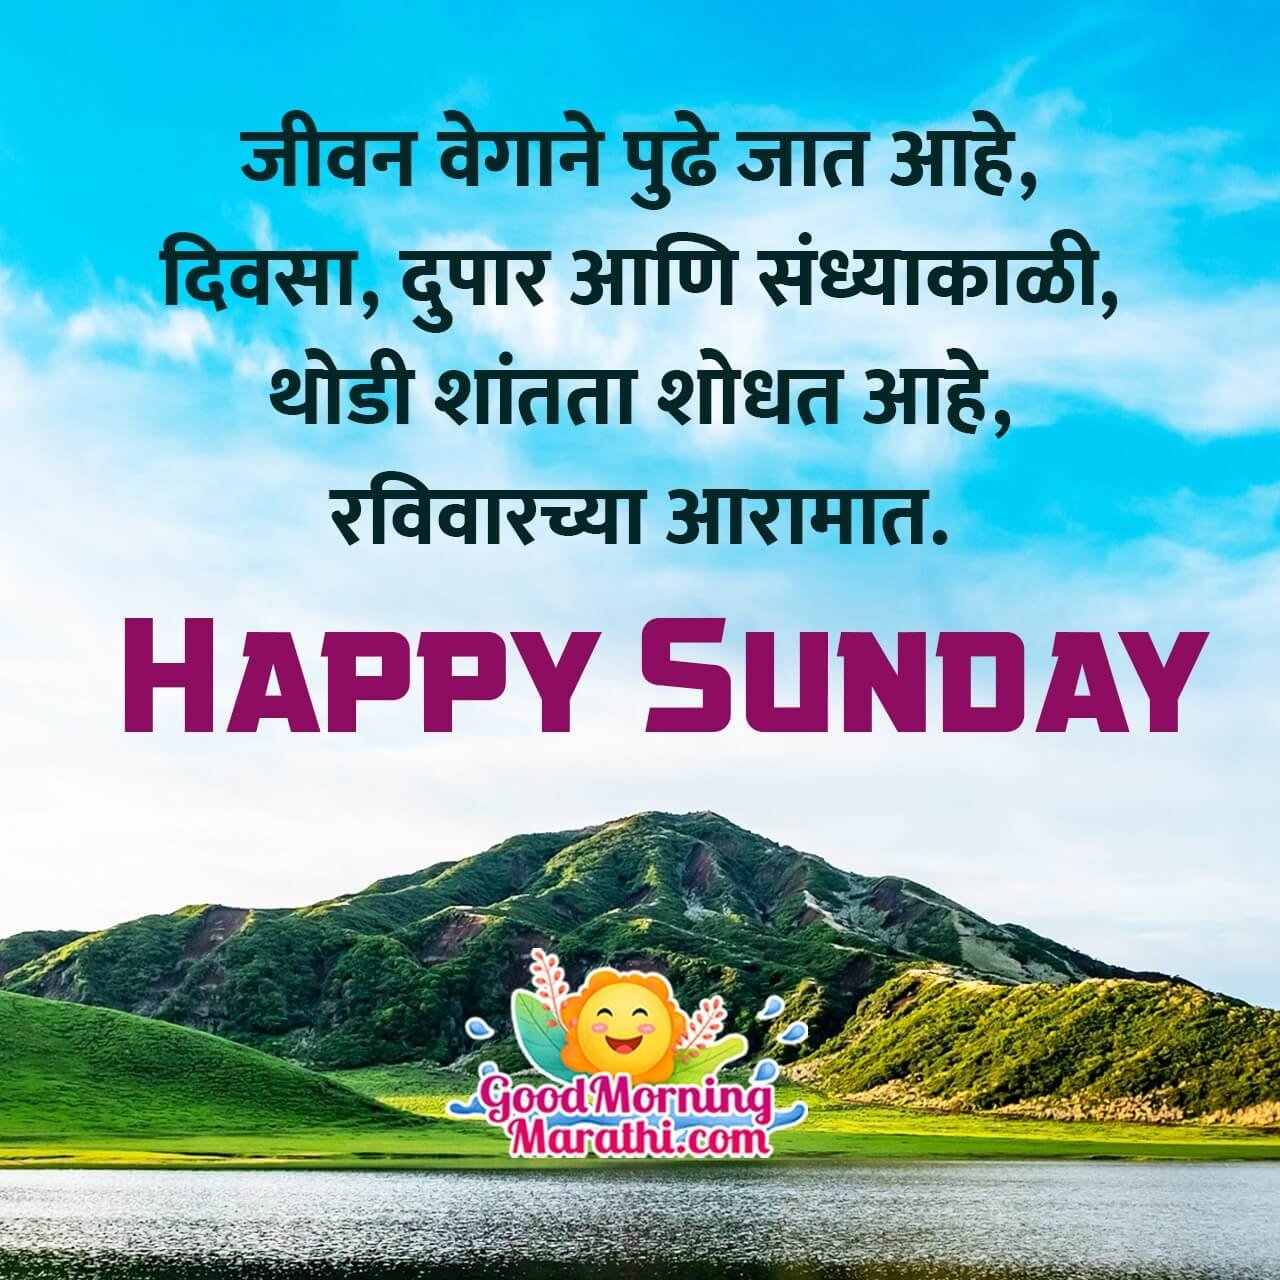 Happy Sunday Marathi Status Images